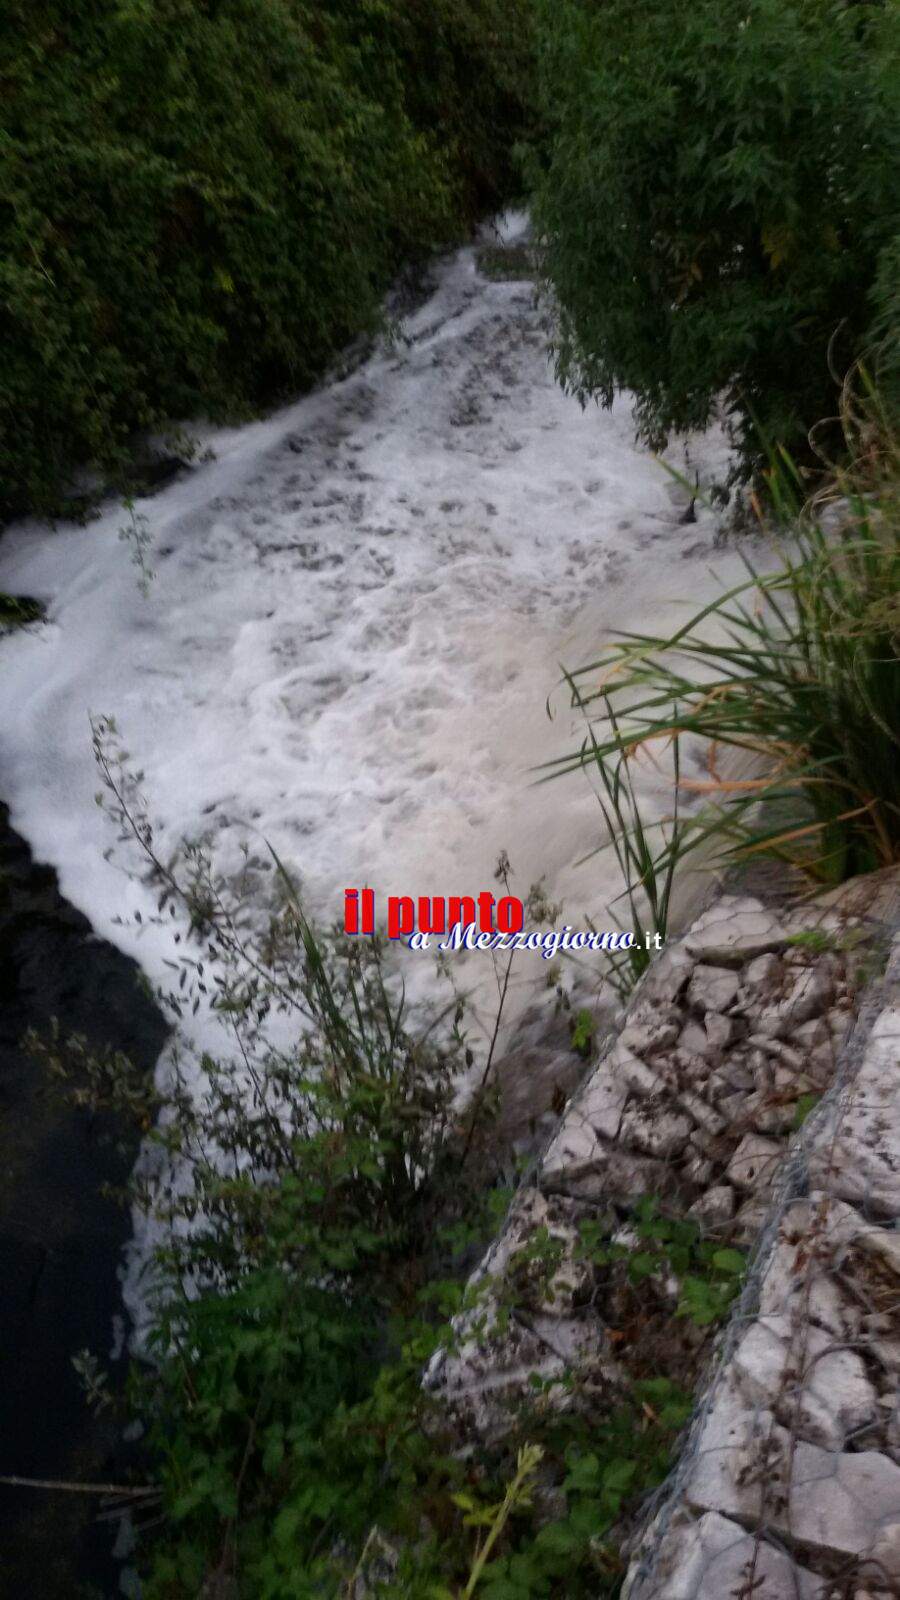 Torna la schiuma sul Rio Pioppeto a Cassino, allarme inquinamento